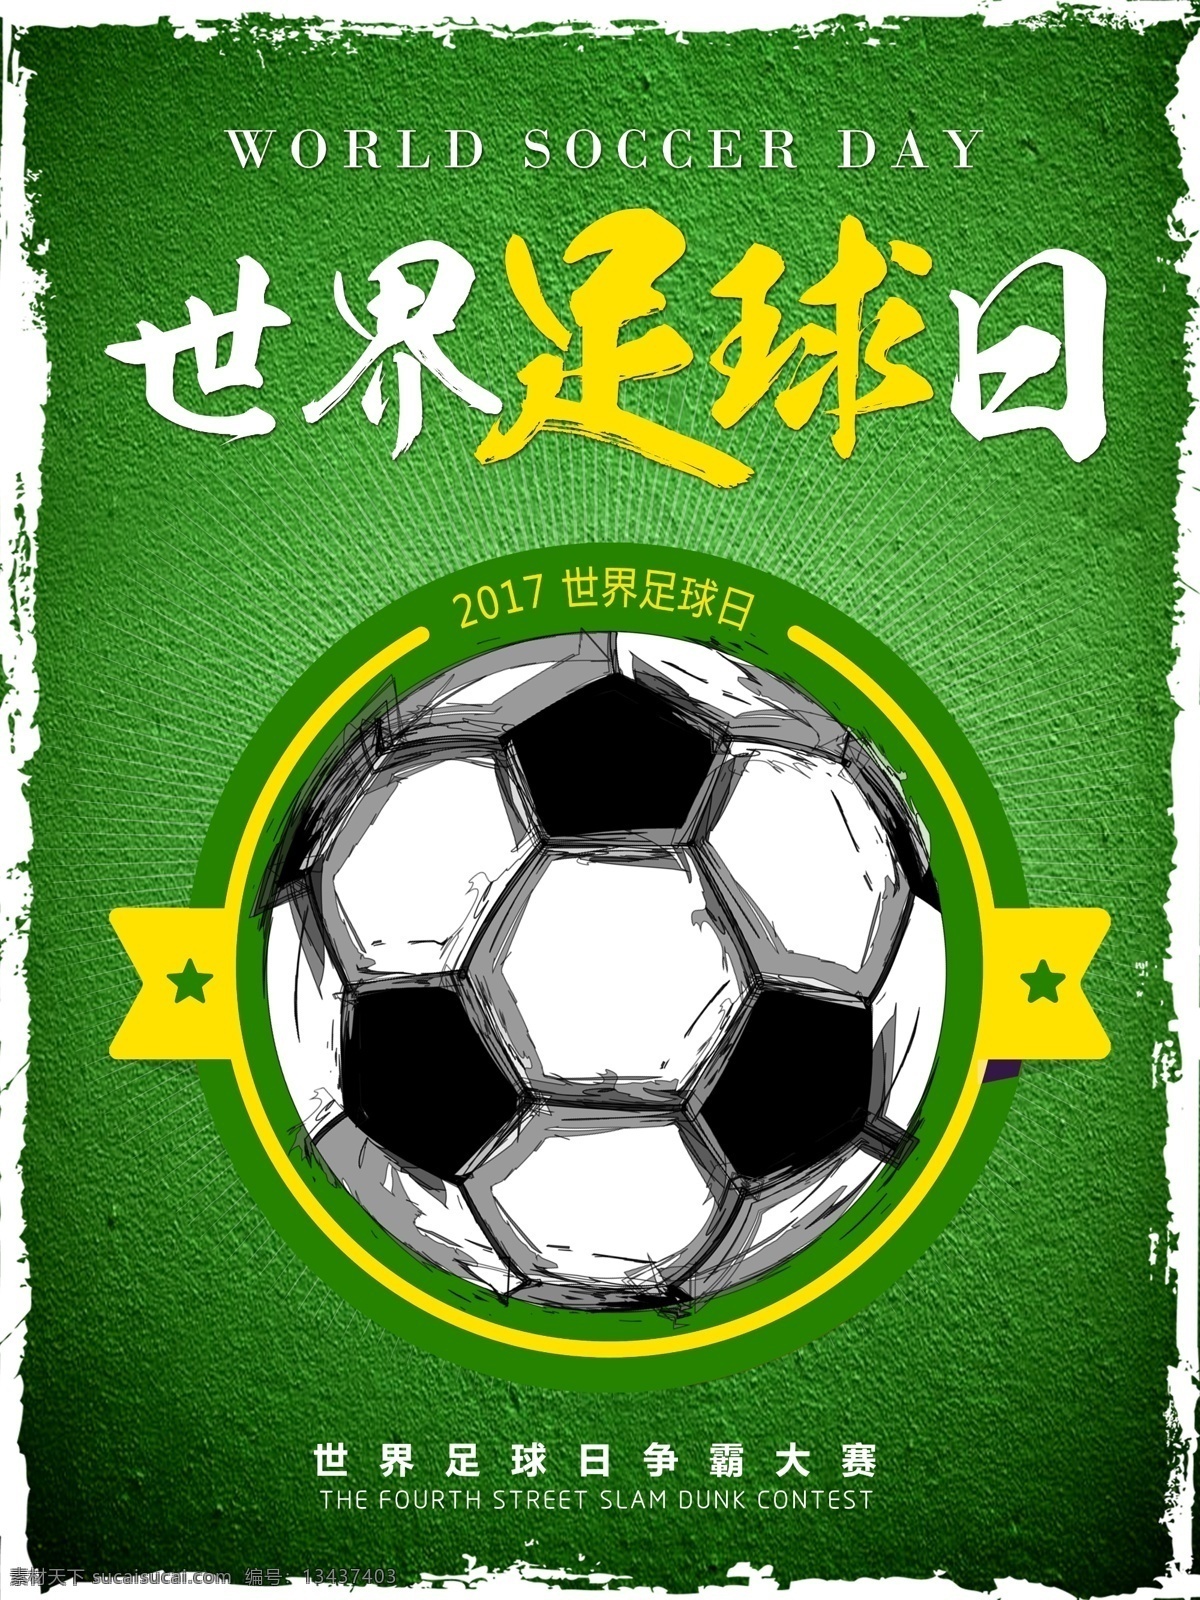 绿色 简约 运动 体育世界 足球 日 海报 体育 世界足球日